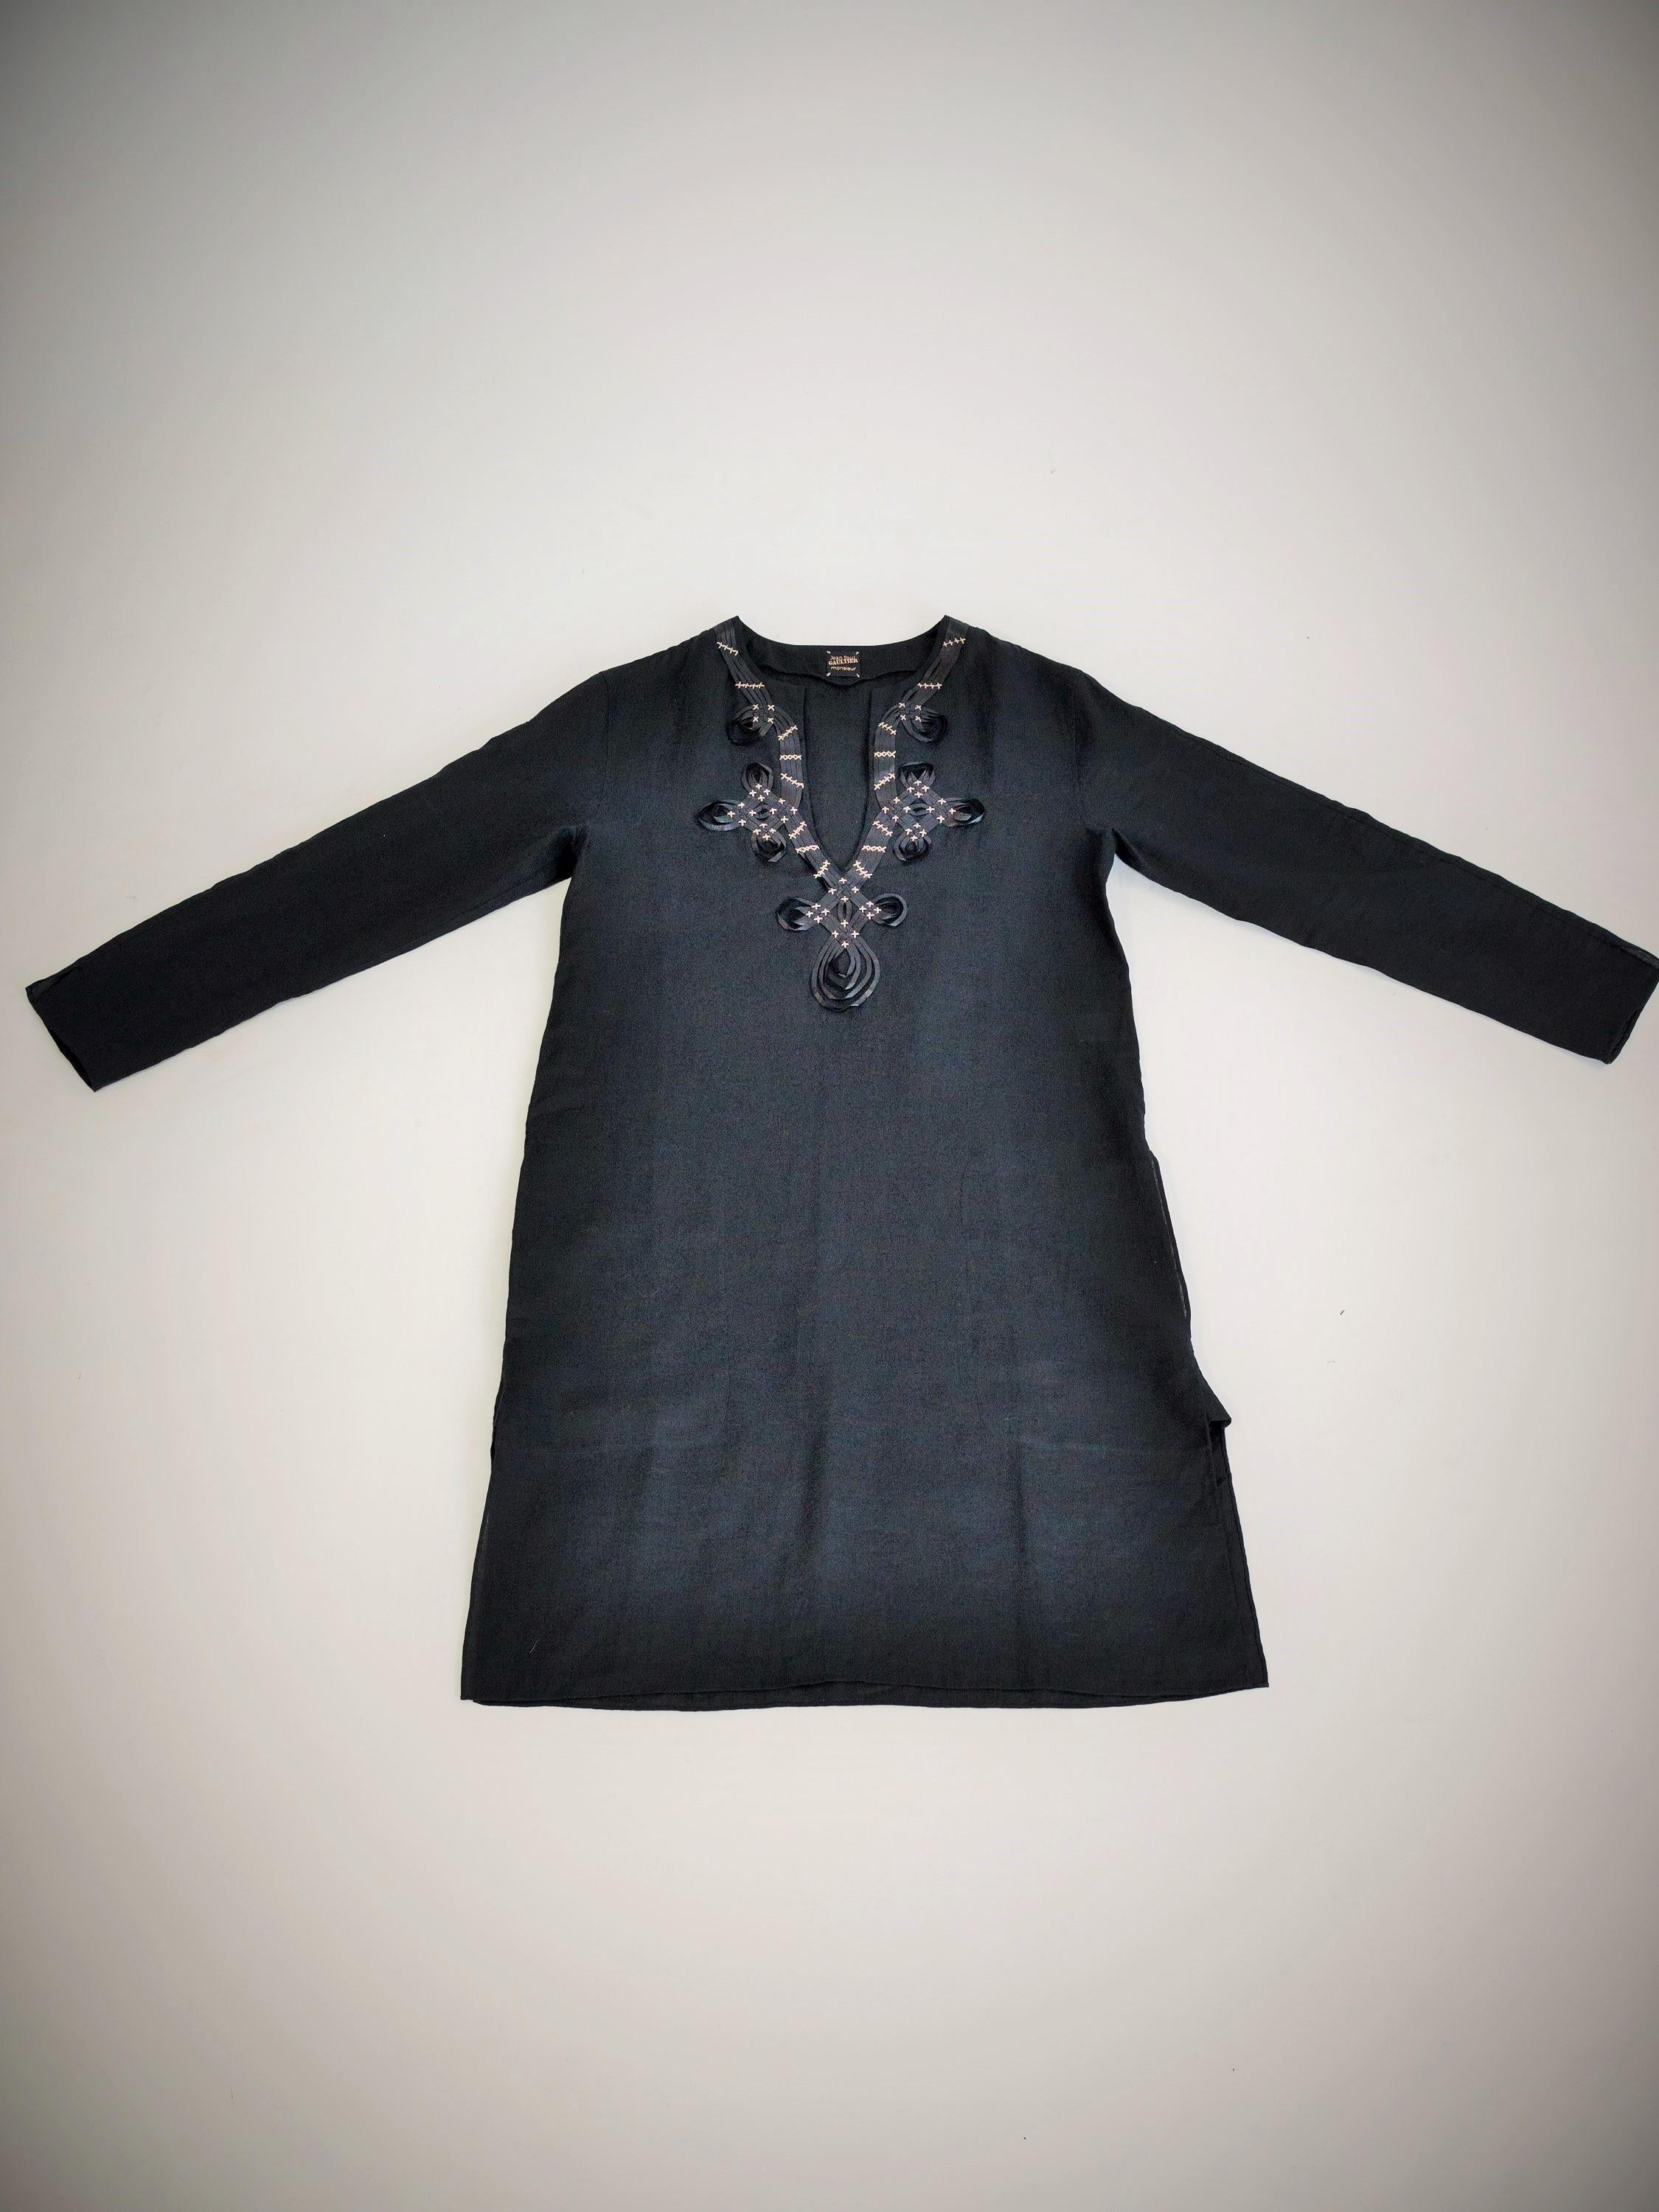 Ungefähr 2000

Frankreich

Schöne orientalische Bluse aus schwarzem Leinen mit Stickerei von Jean-Paul Gaultier Monsieur aus den 2000er Jahren. Freie Inspiration oder eine Anspielung des Designers auf den Schnitt einer Djellaba oder die Länge einer